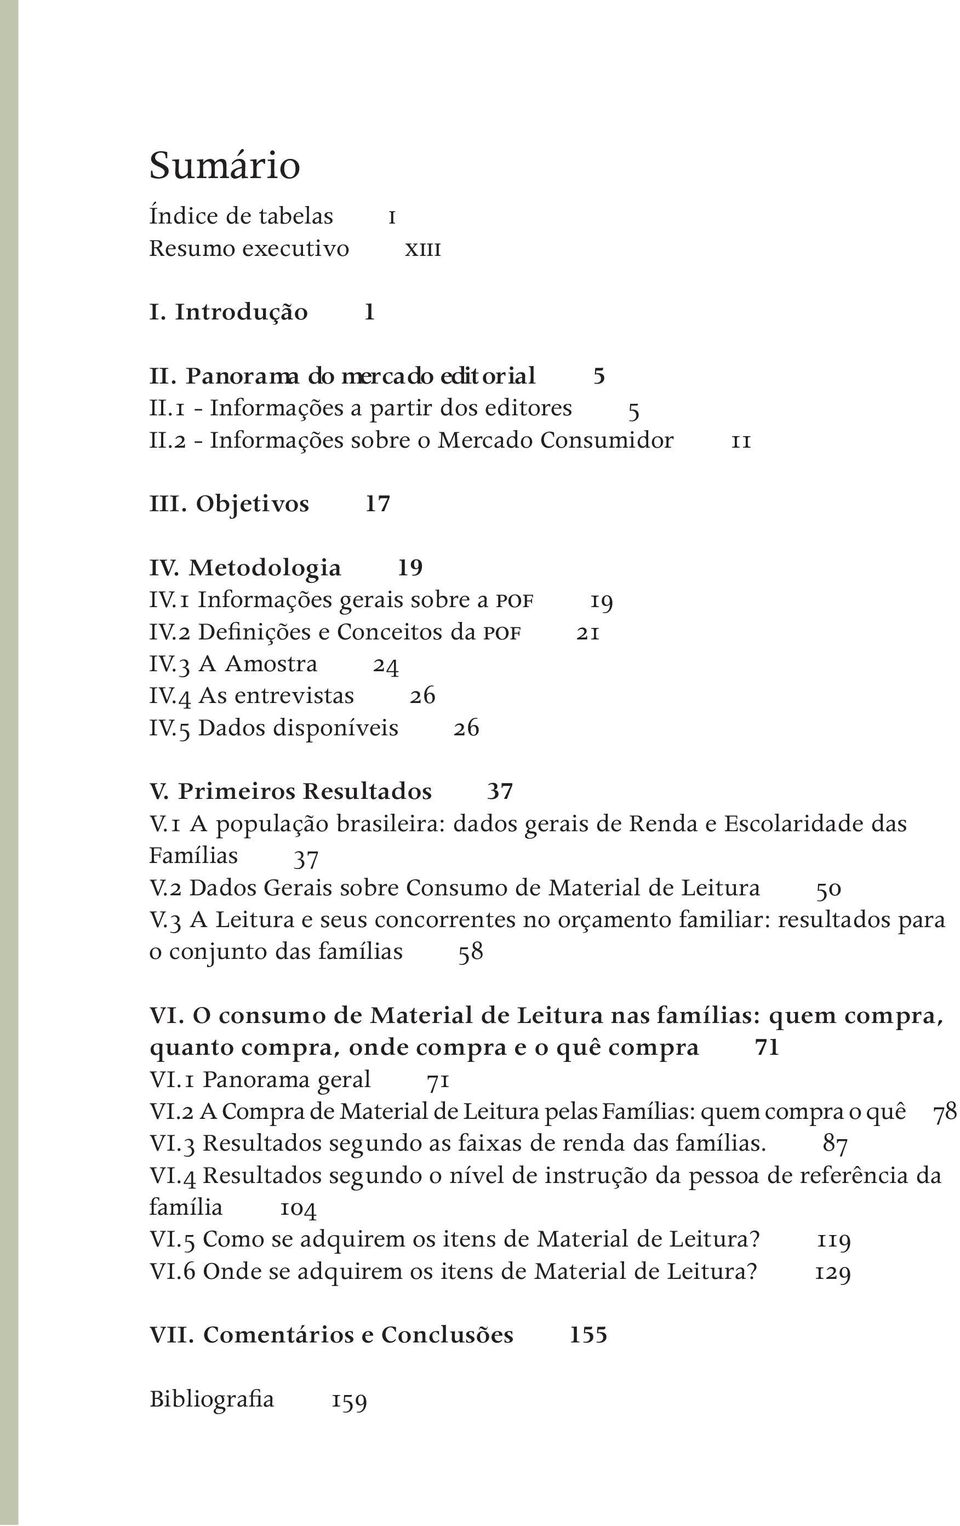 Primeiros Resultados 37 V.1 A população brasileira: dados gerais de Renda e Escolaridade das Famílias 37 V.2 Dados Gerais sobre Consumo de Material de Leitura 50 V.